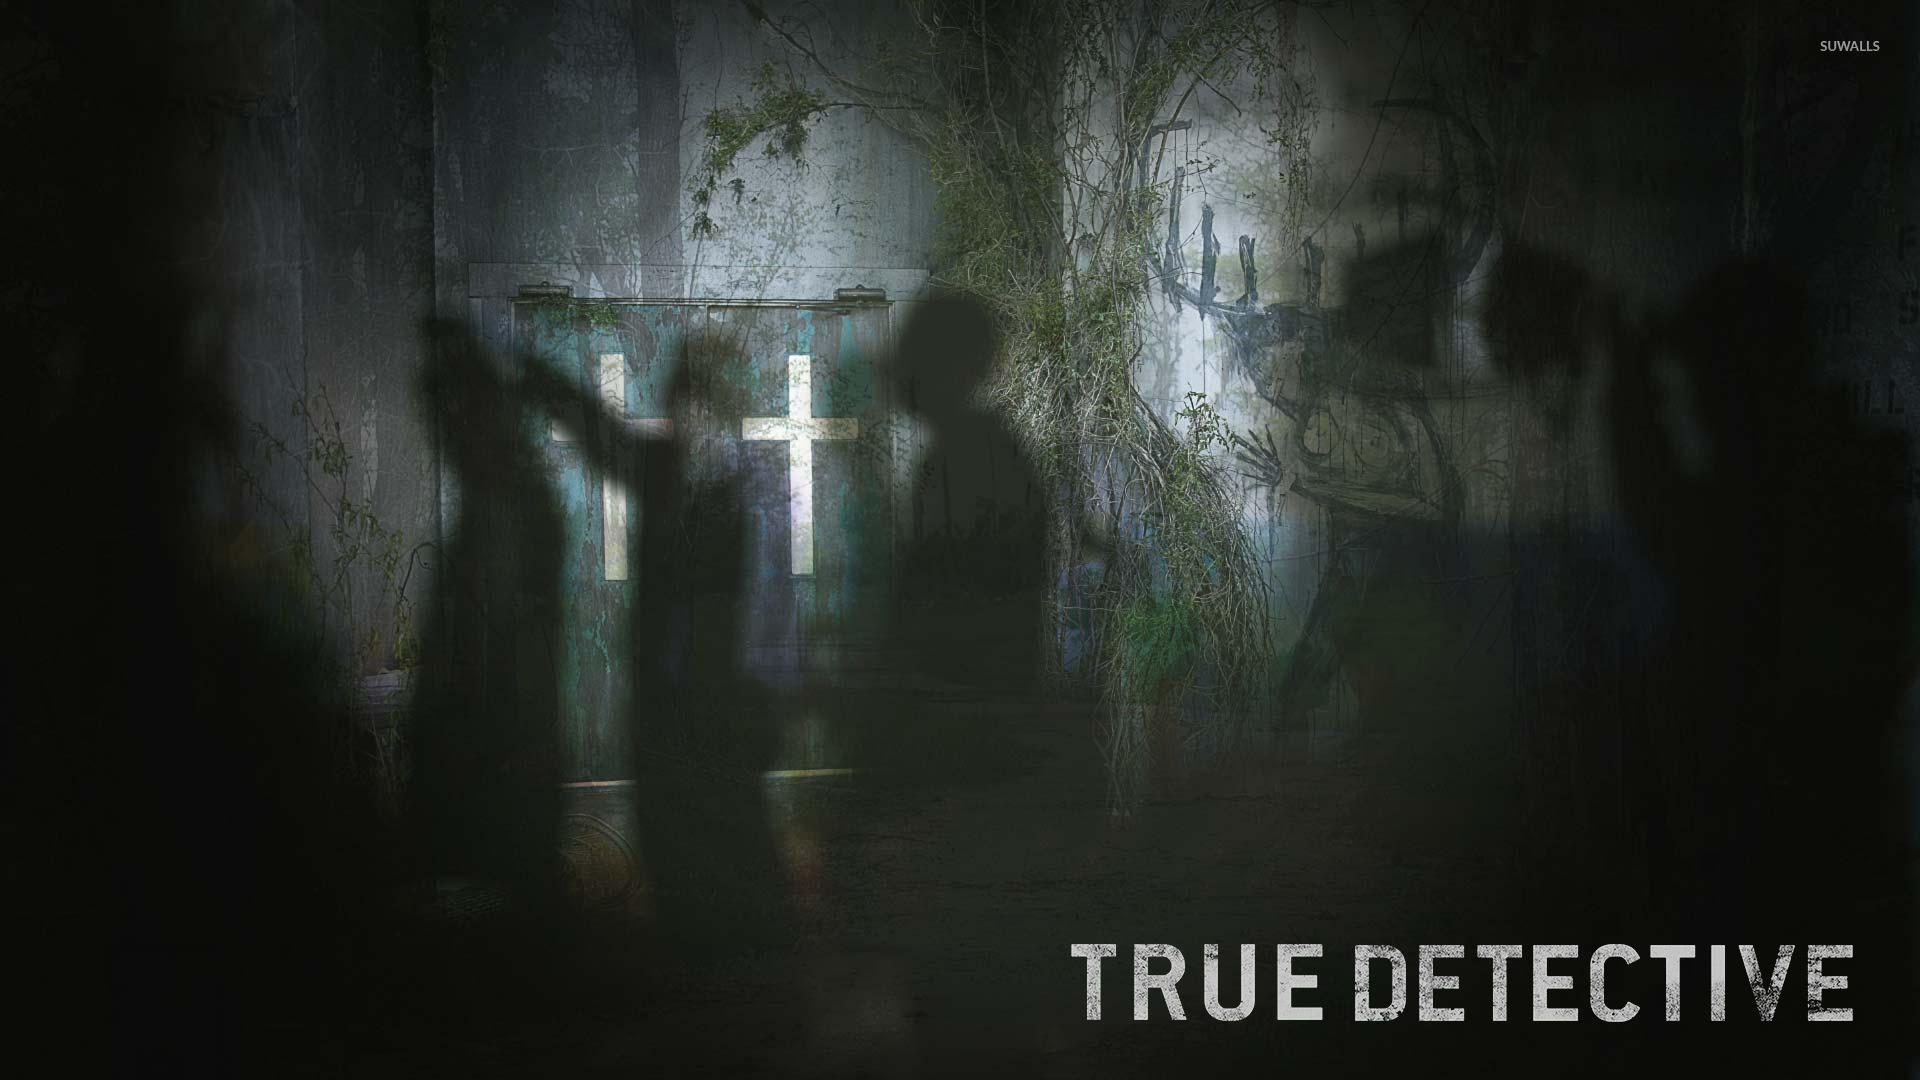 True Detective [2] wallpaper Show wallpaper